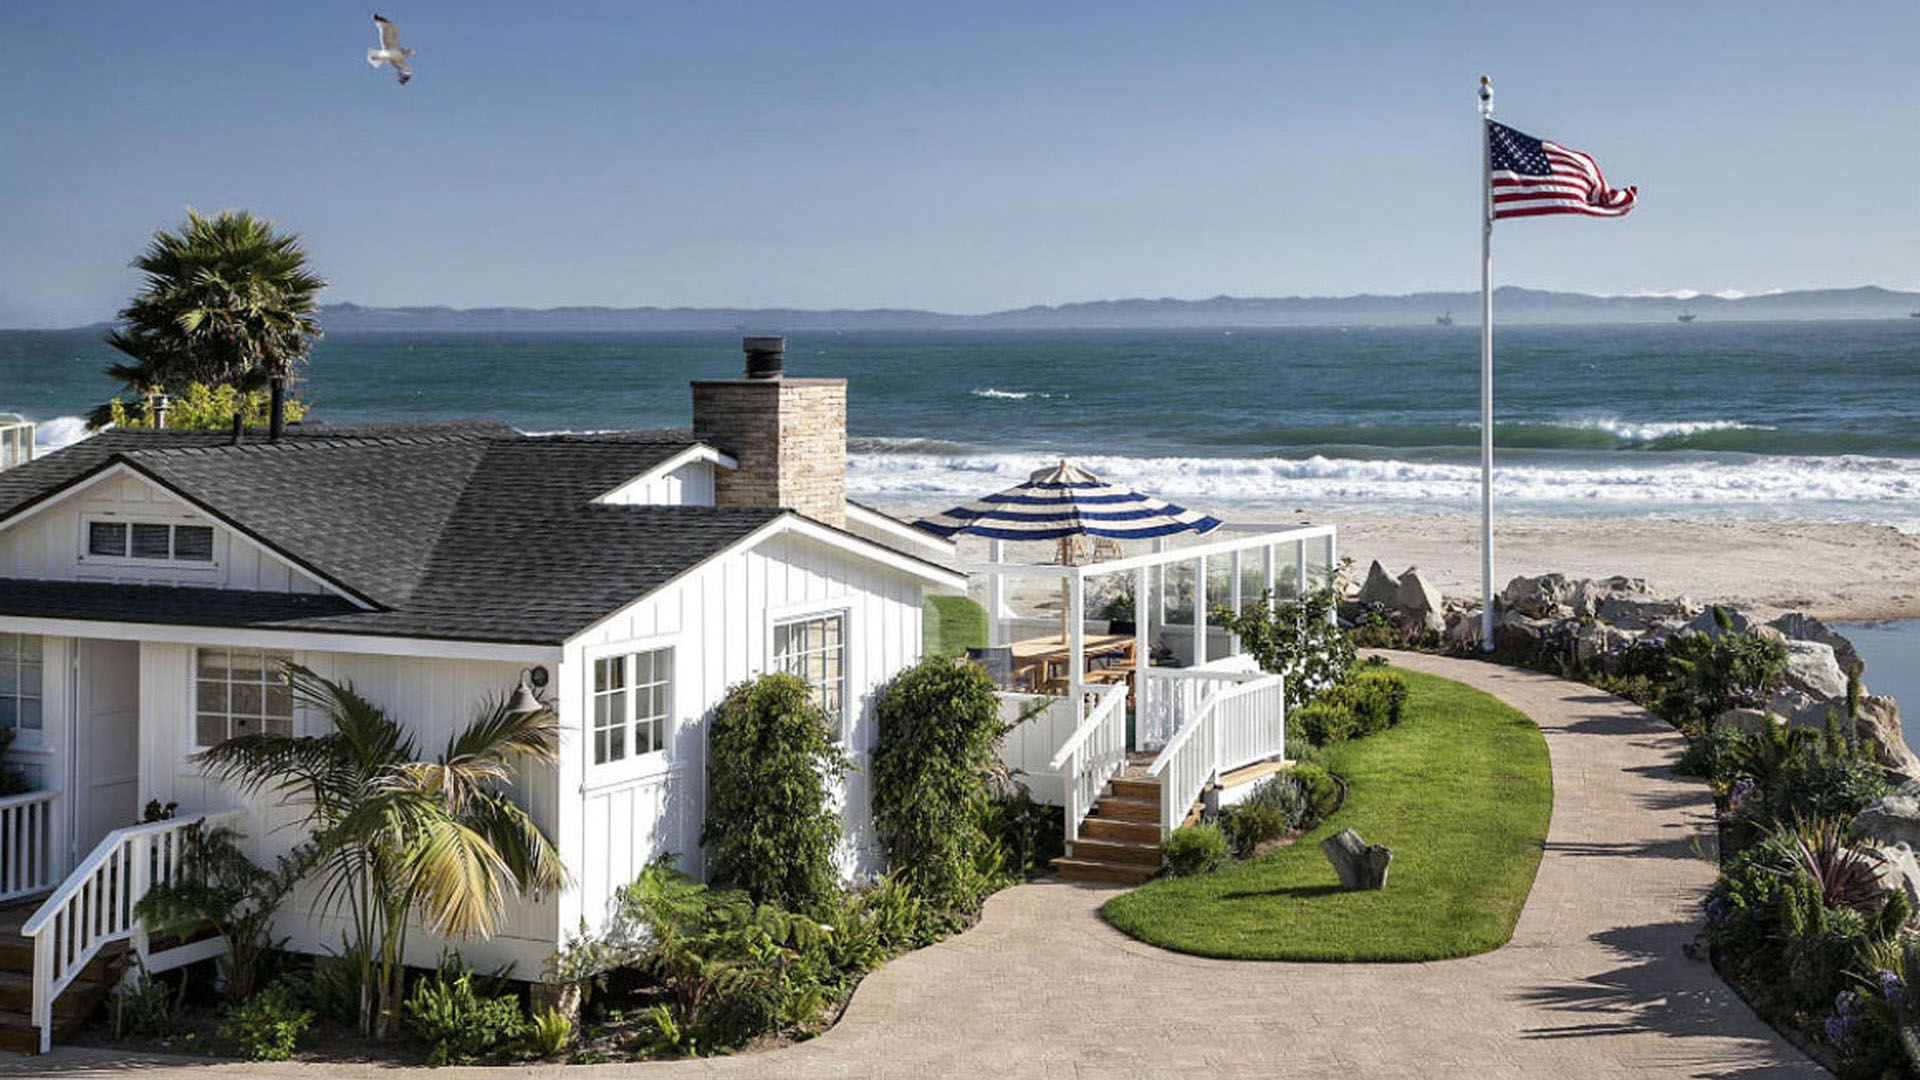 Las mansiones sobre la playa de Los Ángeles cuestan todas más de 5 millones de dólares. A partir del 1 de abril, cualquier venta deberá pagar un impuesto extra Backgrid UK/The Grosby Group

